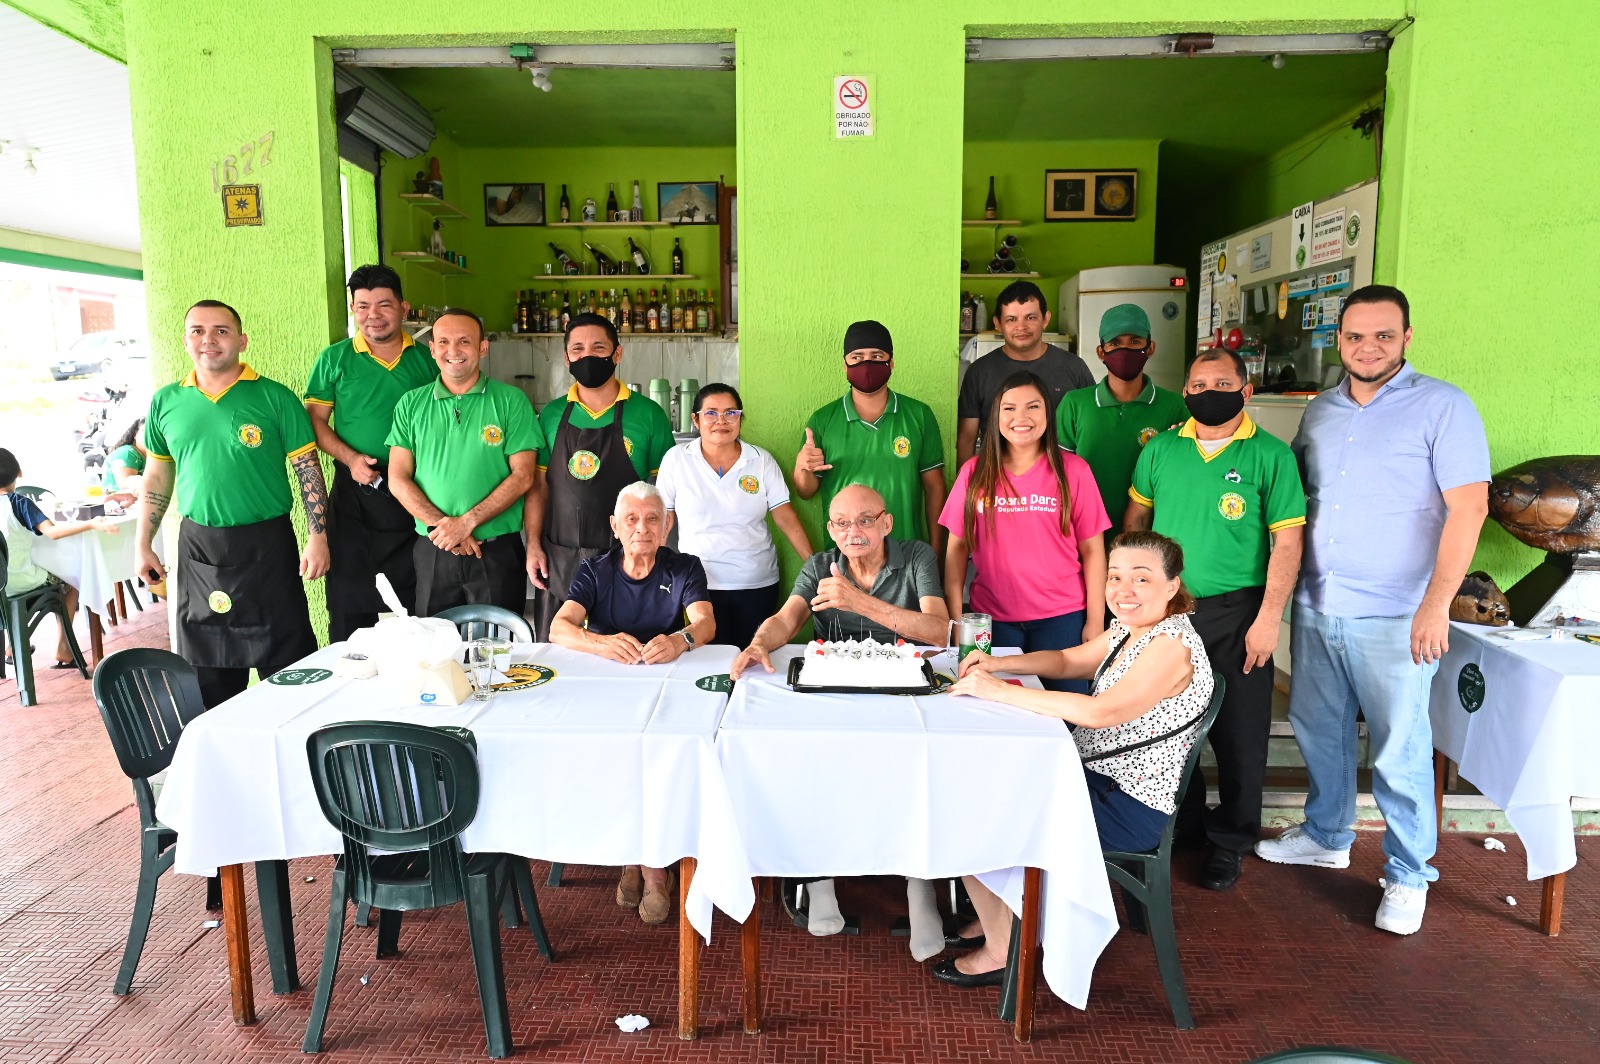 Deputada Joana Darc homenageia restaurante Canto da Peixada que ha 50 anos gera emprego em Manaus e difunde a culinaria amazonense